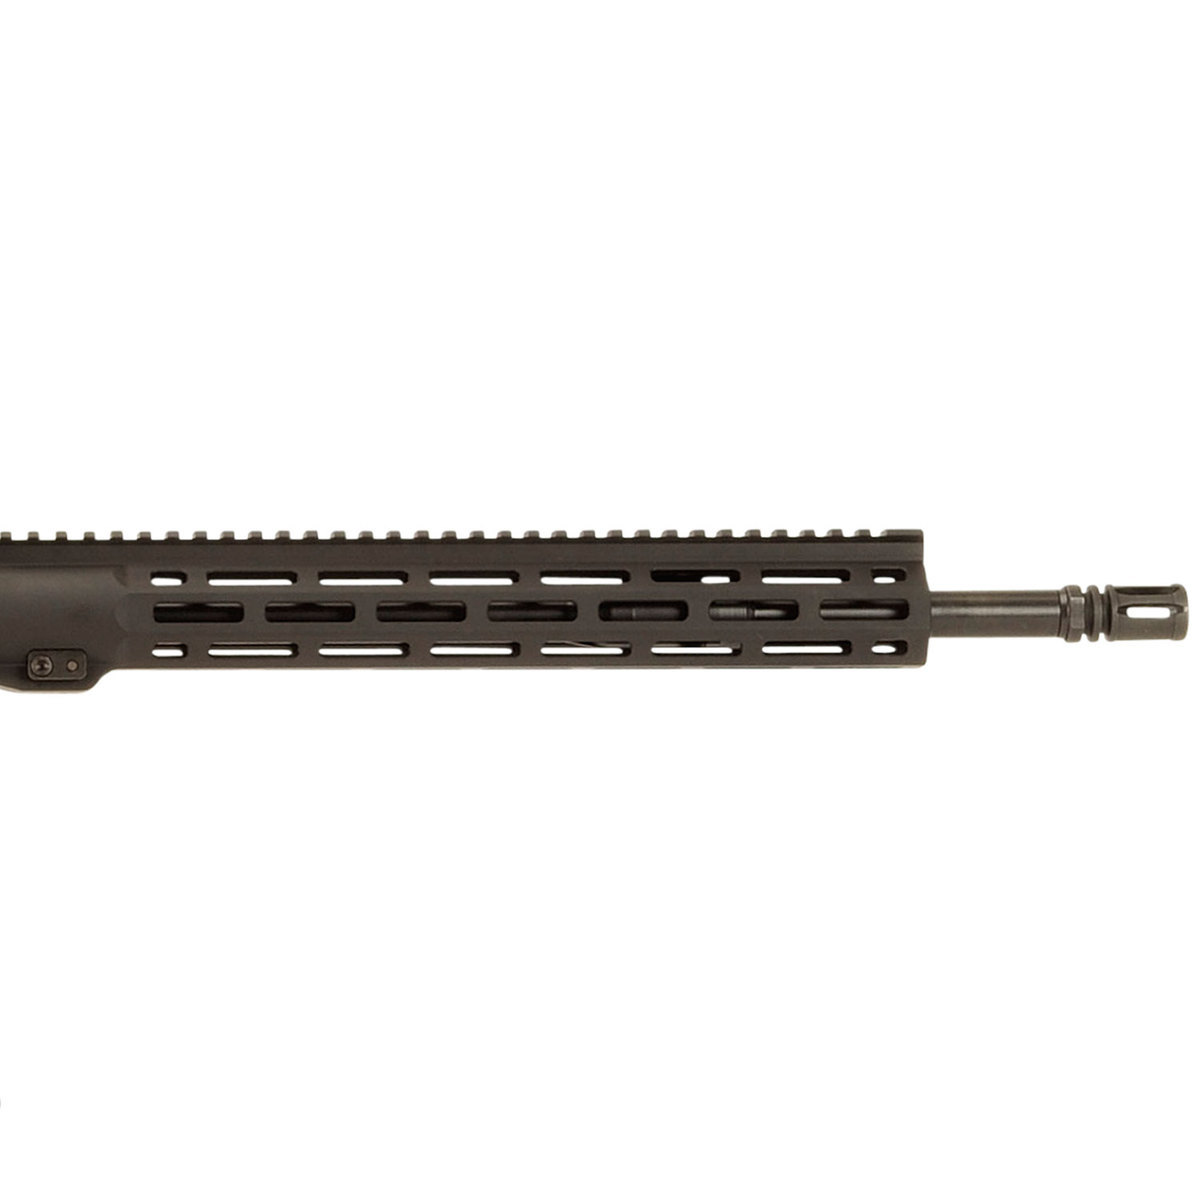 Savage Arms MSR 15 Recon 2.0 5.56mm NATO 16.13in Black Semi Automatic ...